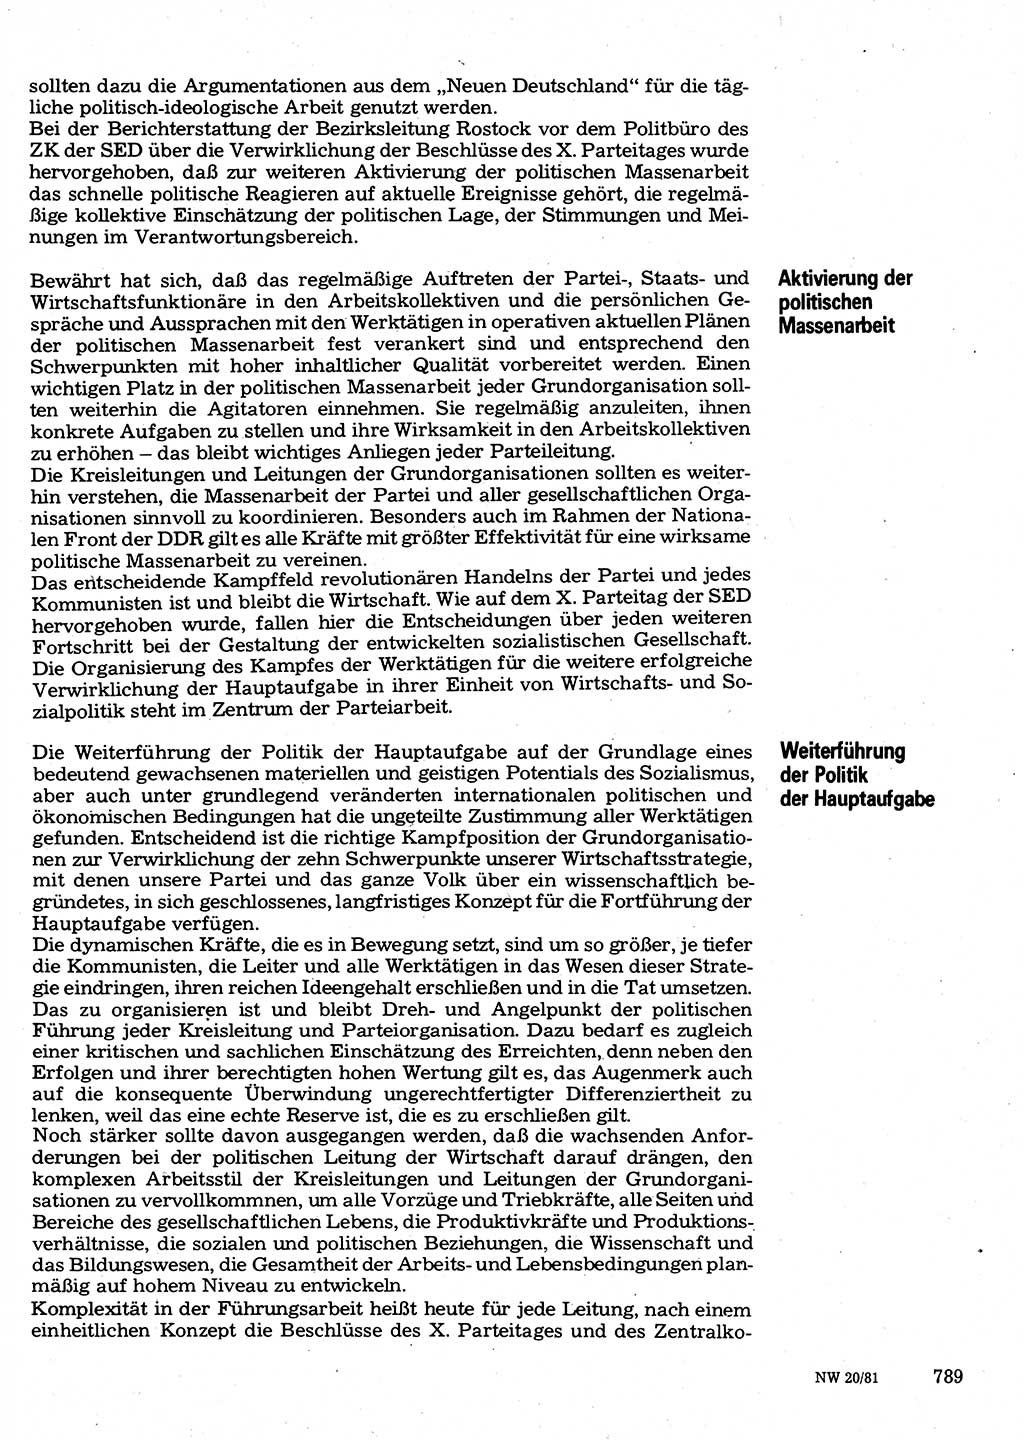 Neuer Weg (NW), Organ des Zentralkomitees (ZK) der SED (Sozialistische Einheitspartei Deutschlands) für Fragen des Parteilebens, 36. Jahrgang [Deutsche Demokratische Republik (DDR)] 1981, Seite 789 (NW ZK SED DDR 1981, S. 789)